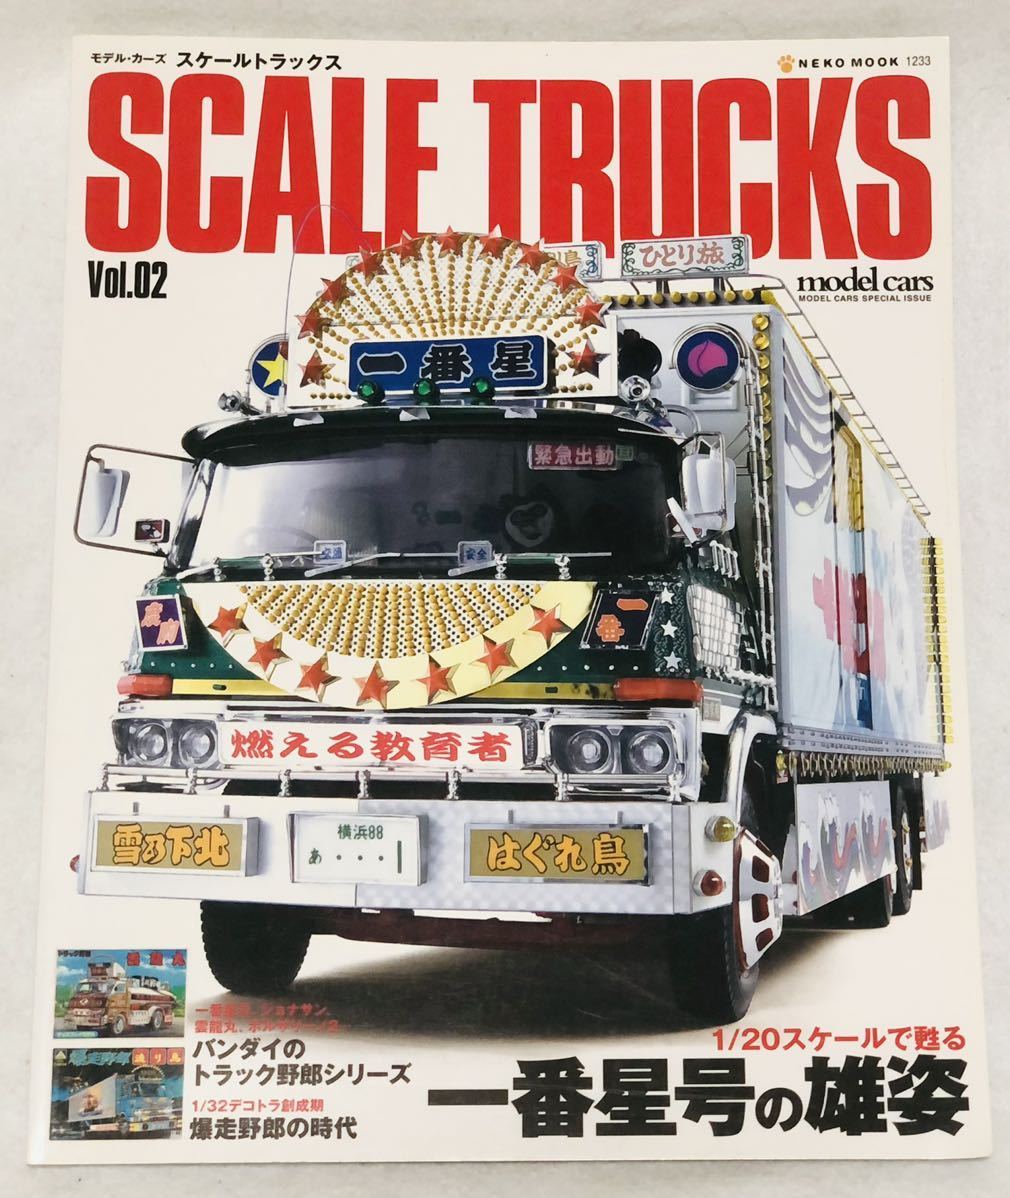 モデルカーズ スケール トラックス Vol.2 トラック野郎一番星 デコトラ